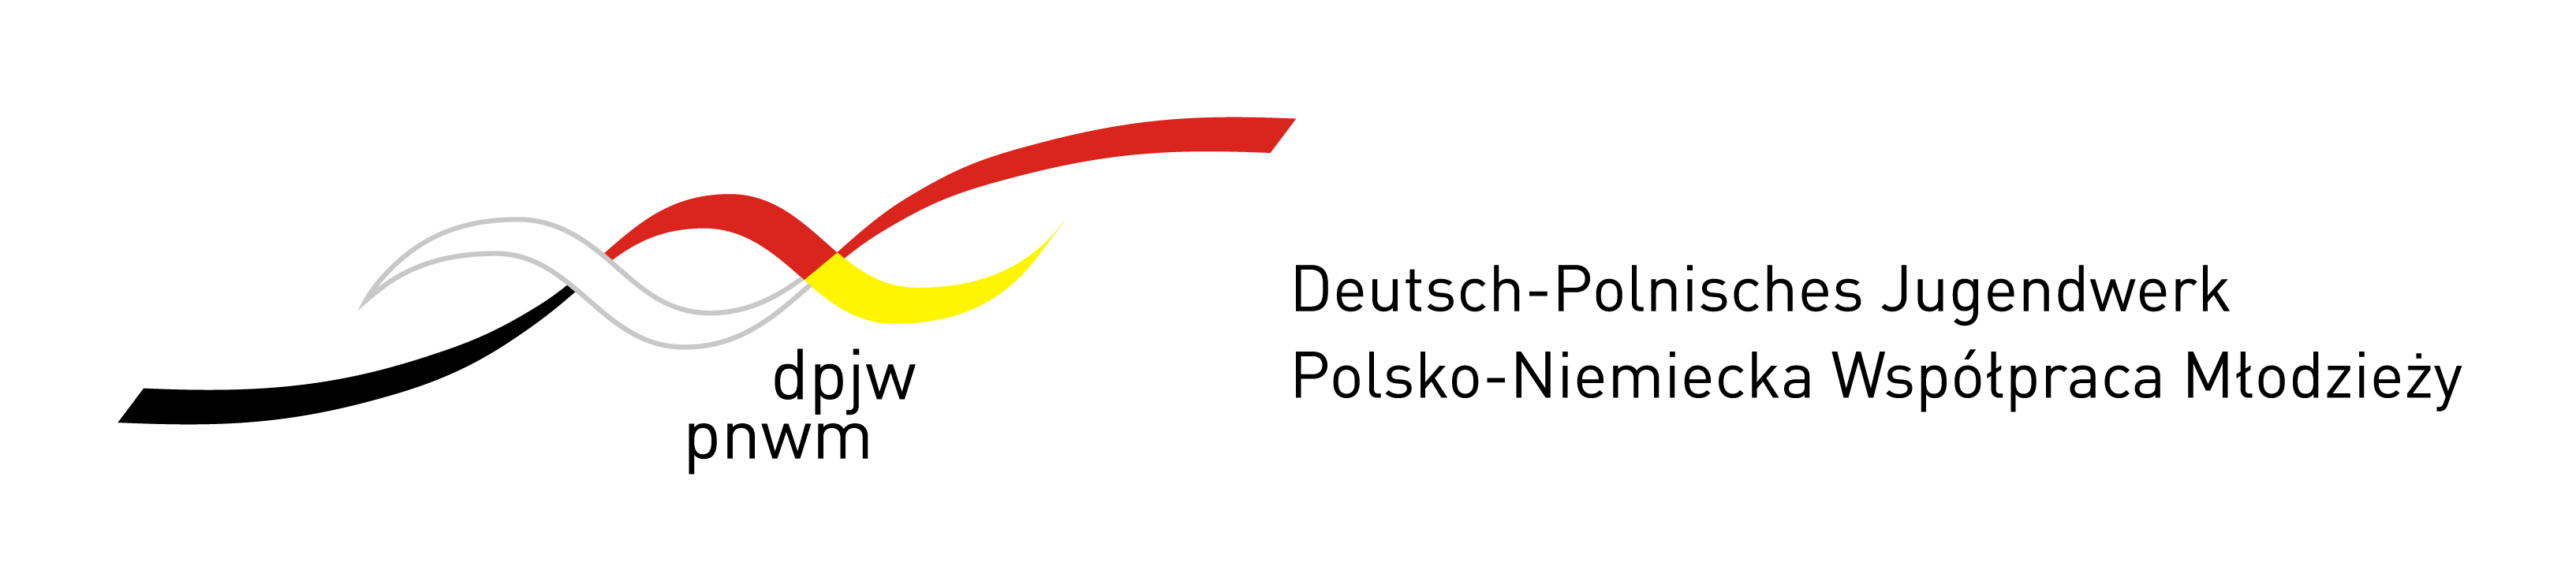 DPJW logo